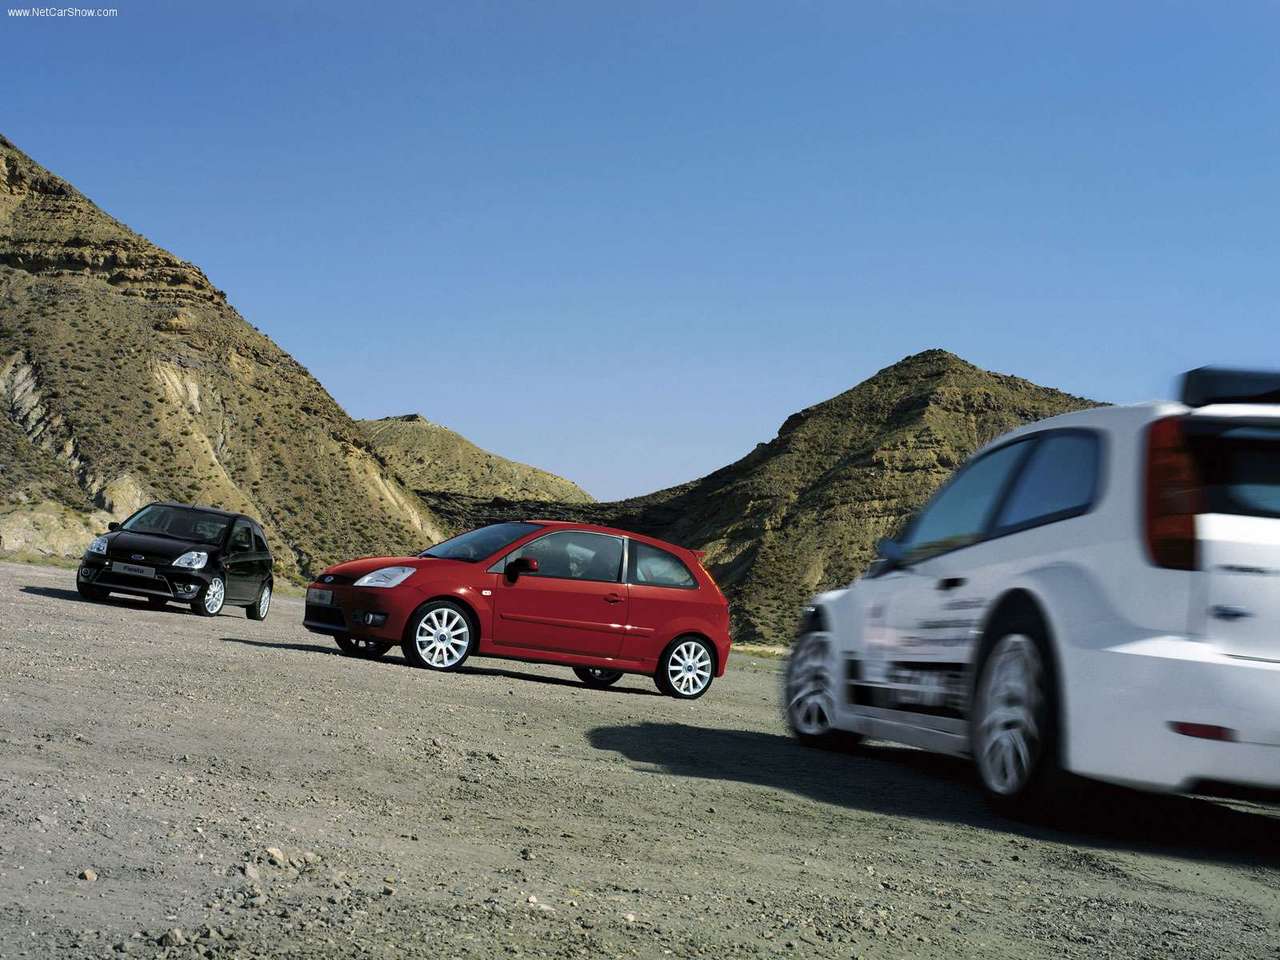 Ford Fiesta ST 150 : Va y avoir du sport (2004-2008)